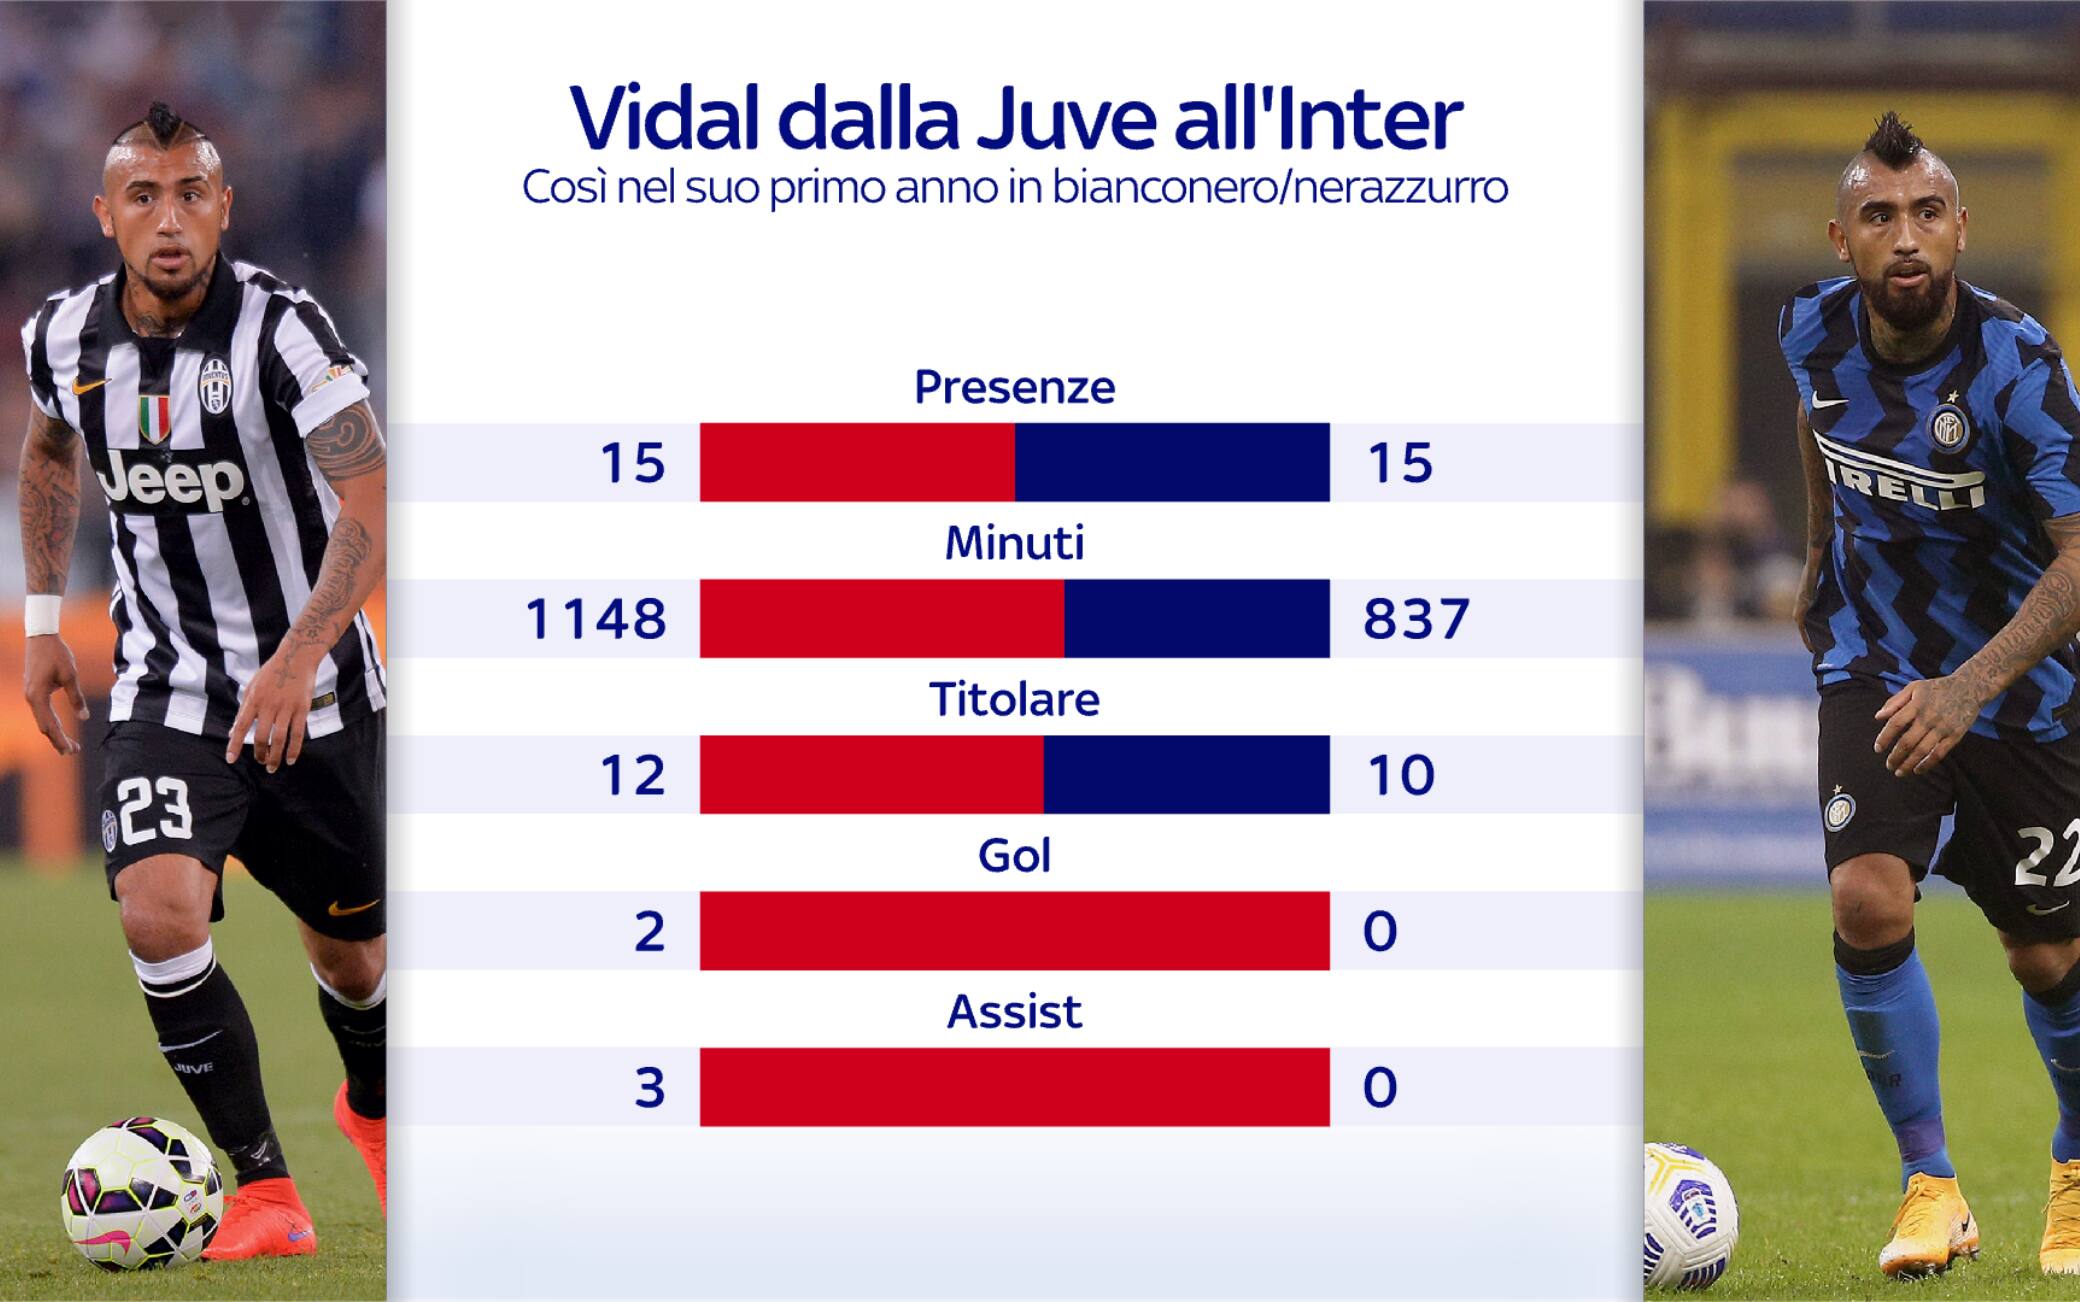 Vidal dalla Juve all'Inter